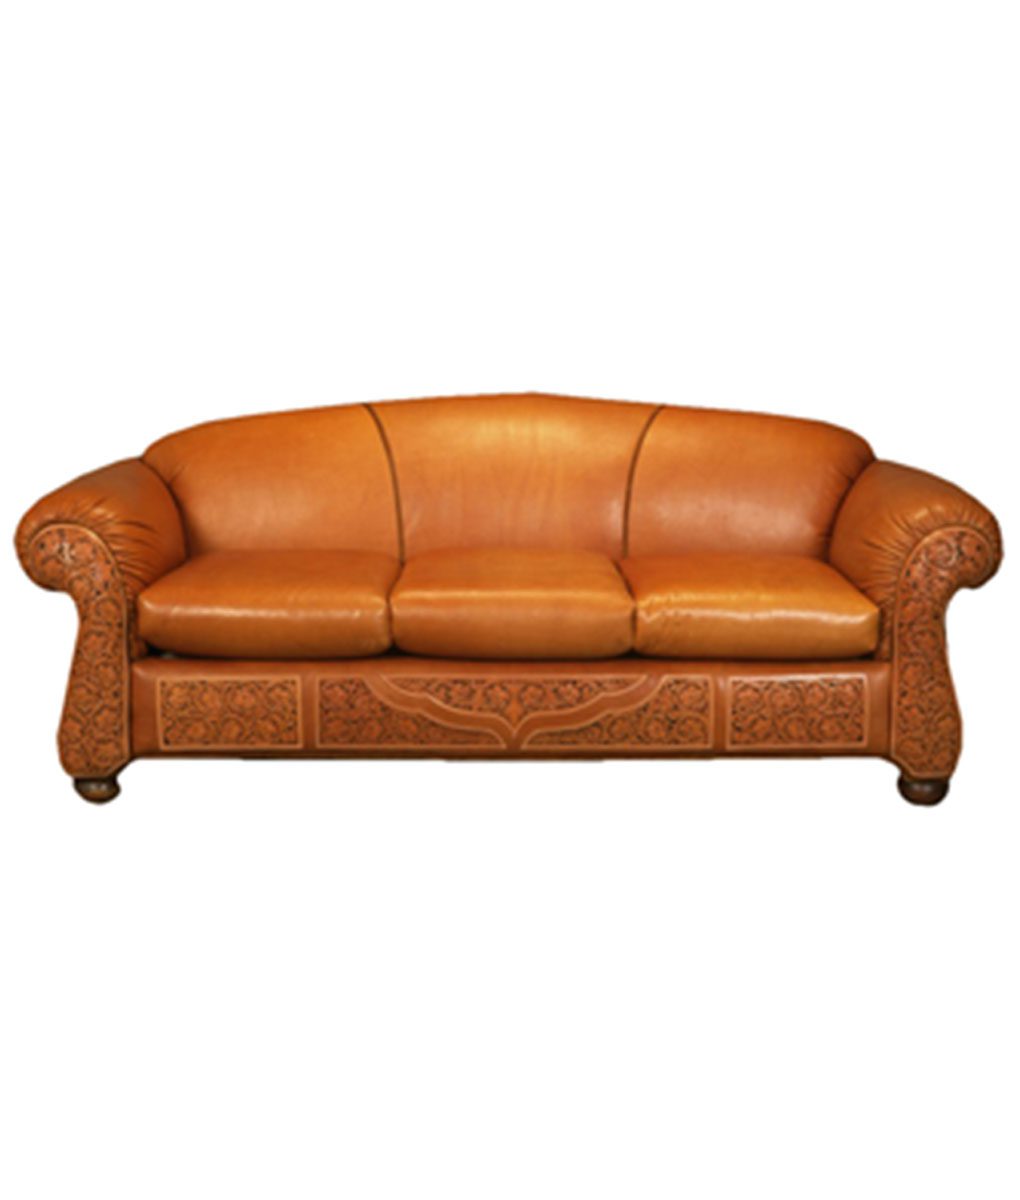 Tooled Leather Sofa Western, Leather Rustic Sofa